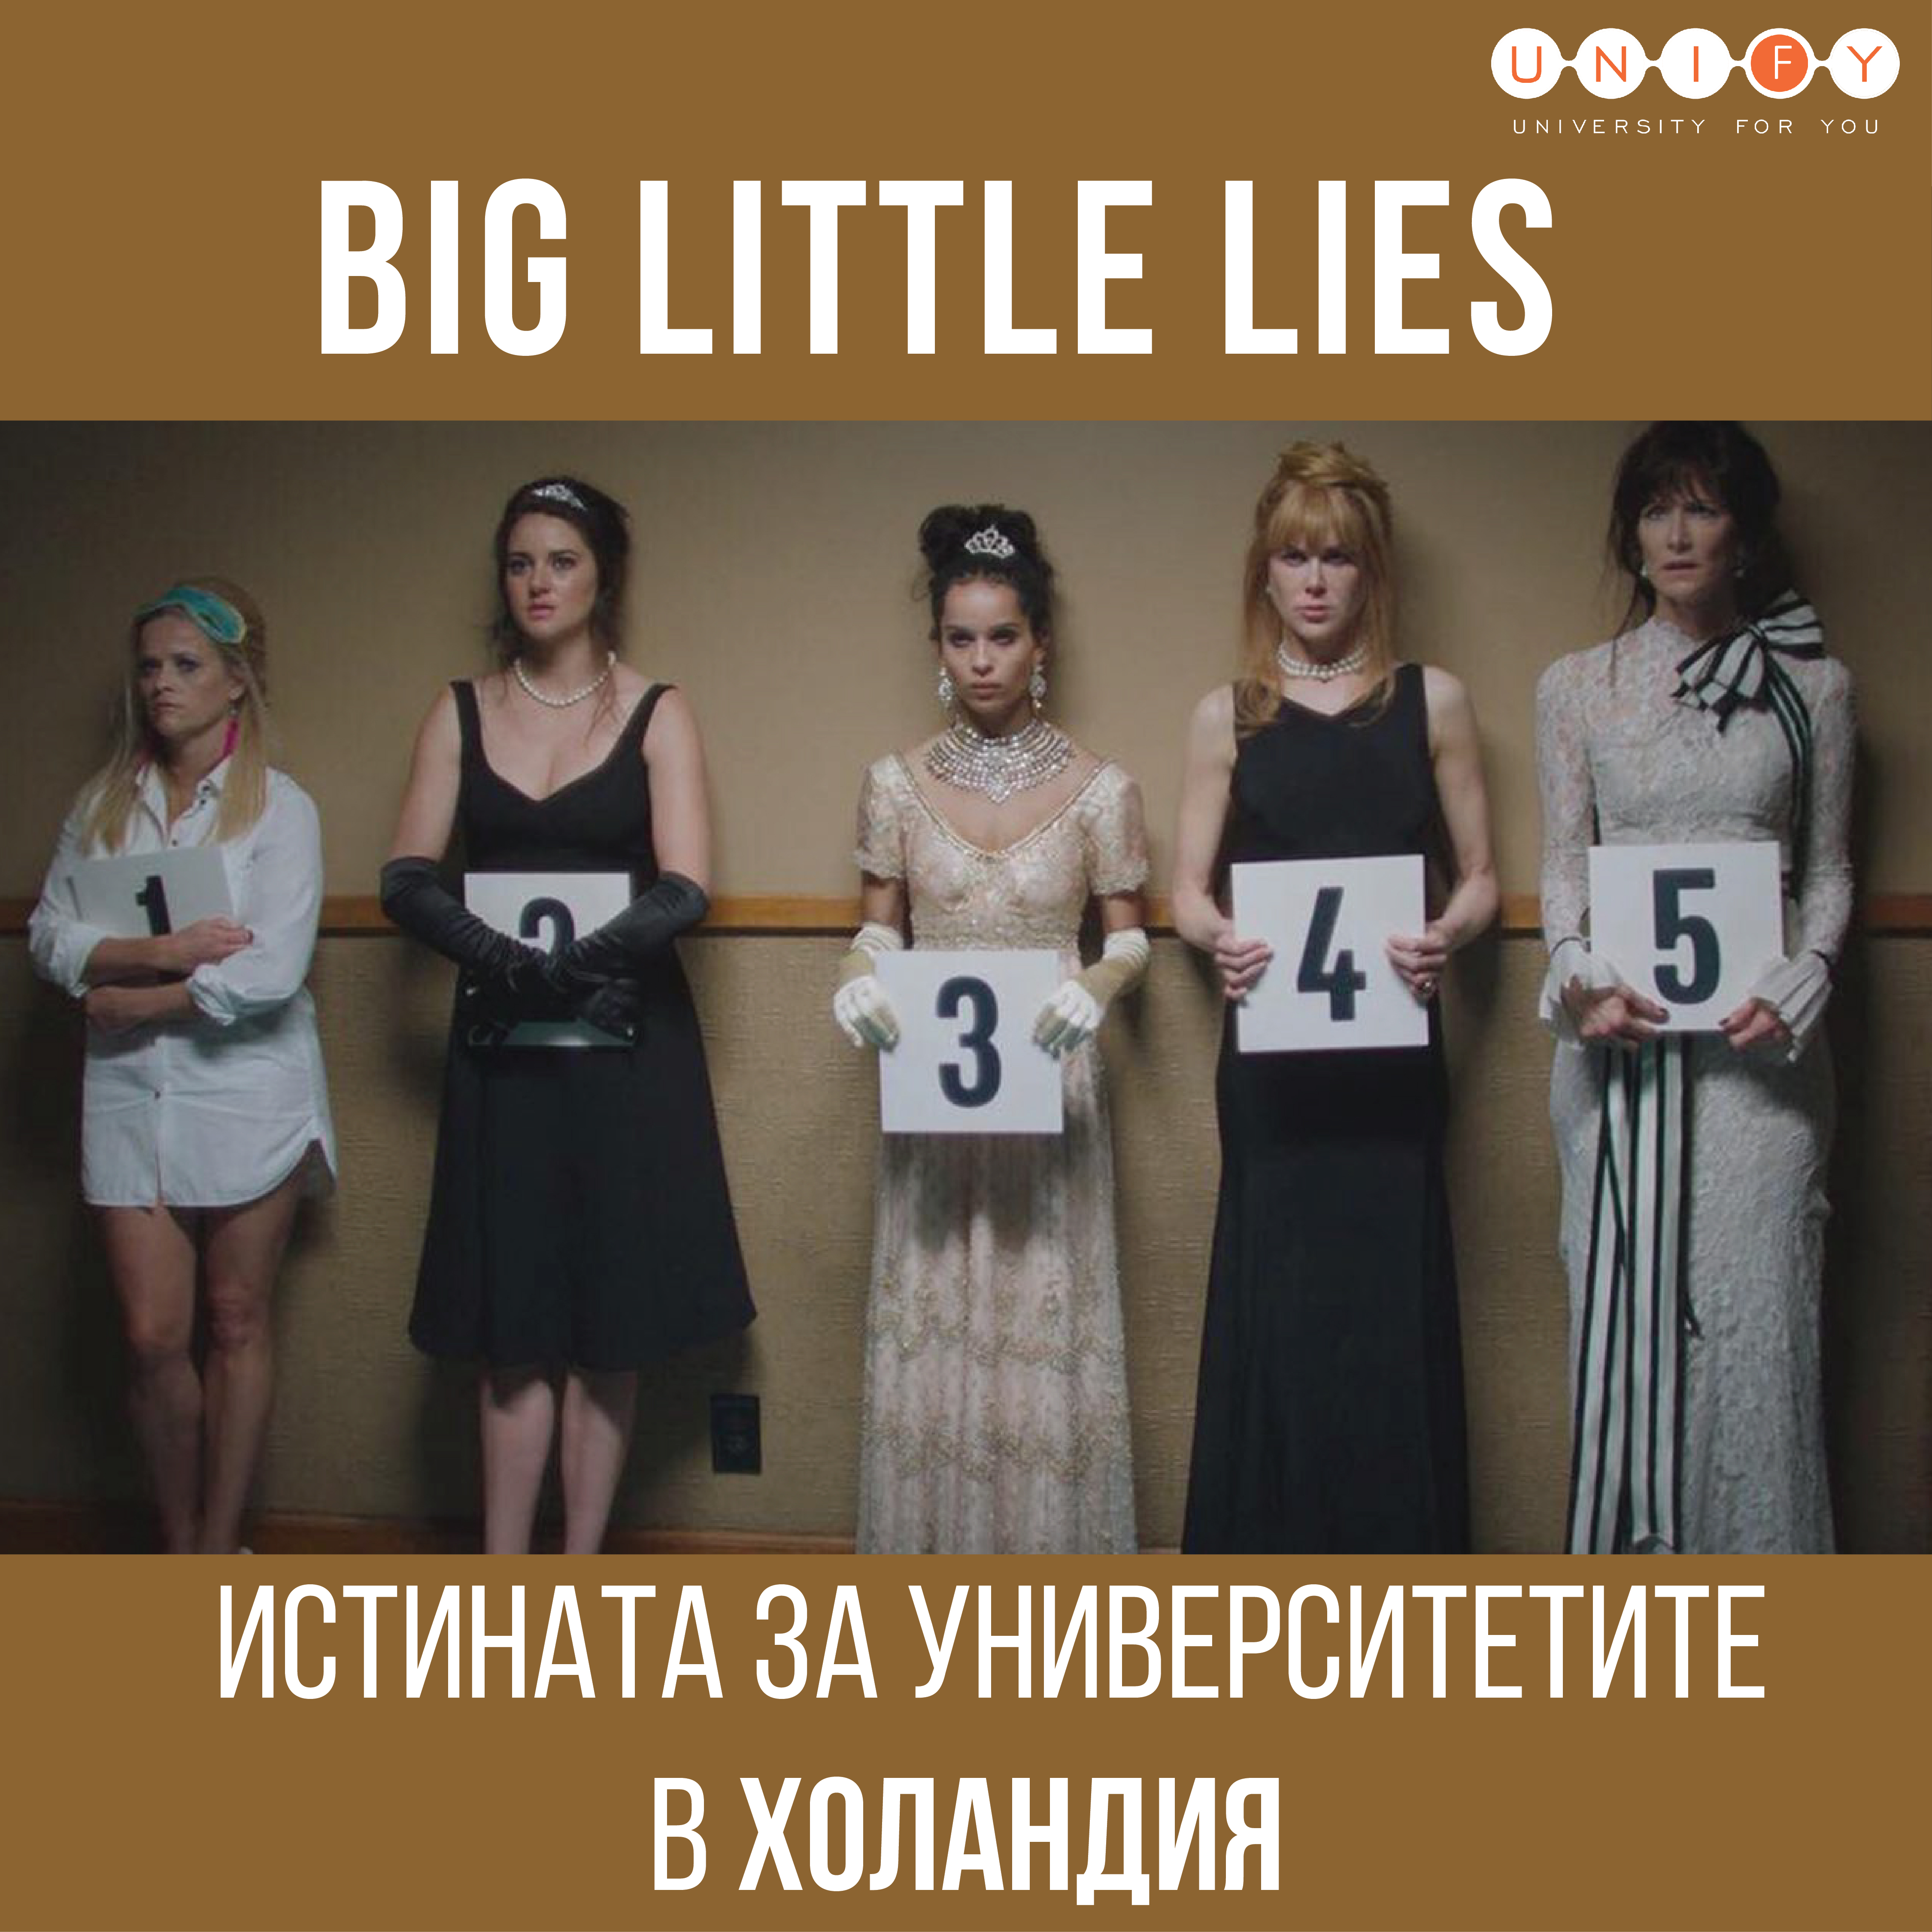 Разбийте митовете с презентацията "Big Little Lies - истината за университетите в Холандия"